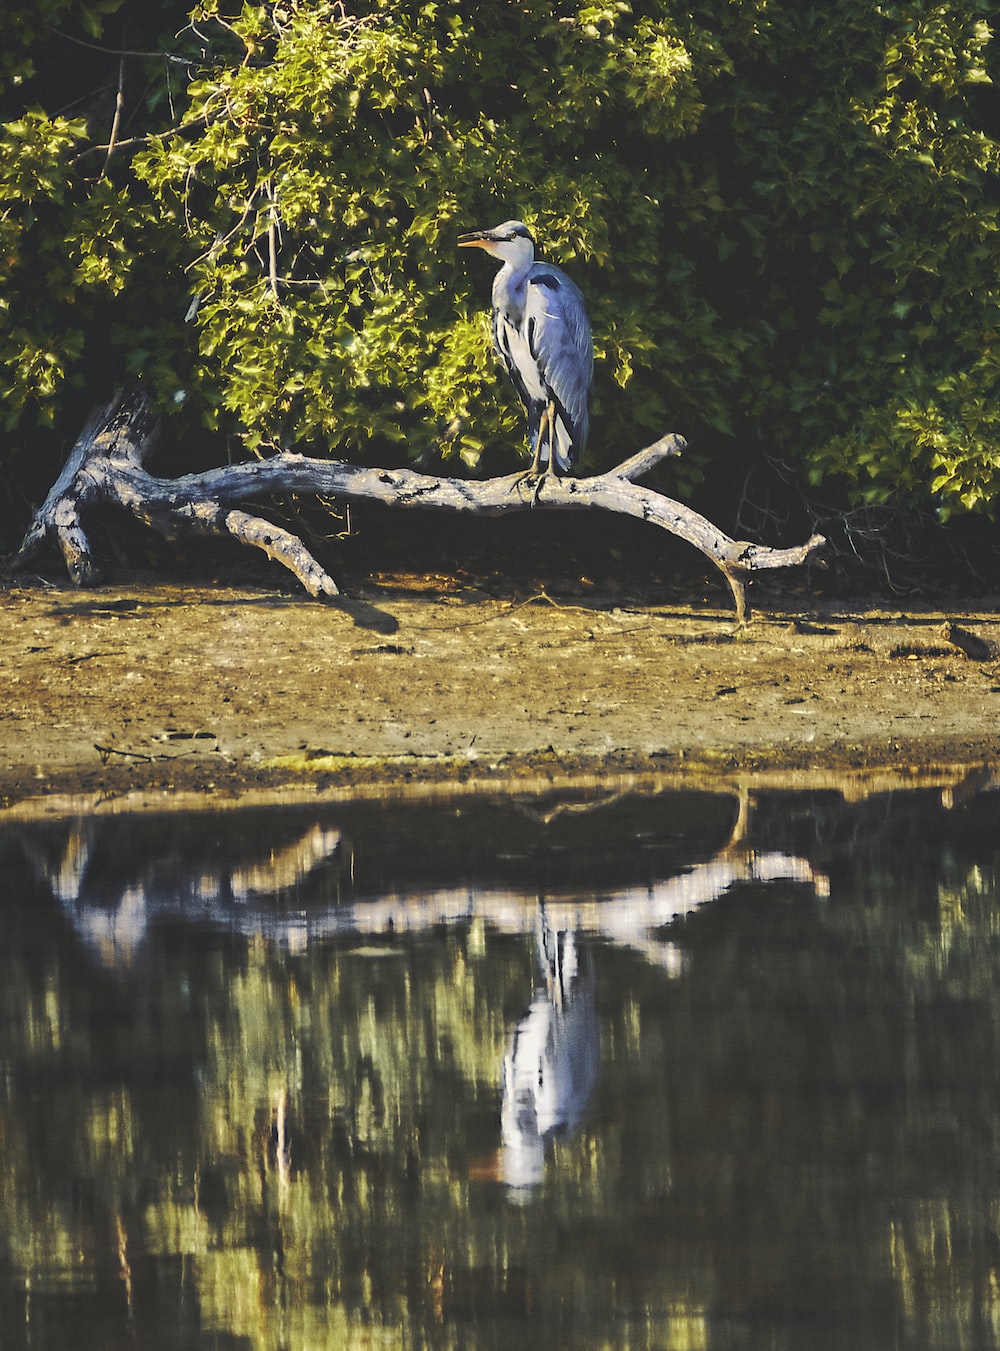 gray bird on brown tree branch near lake during daytime